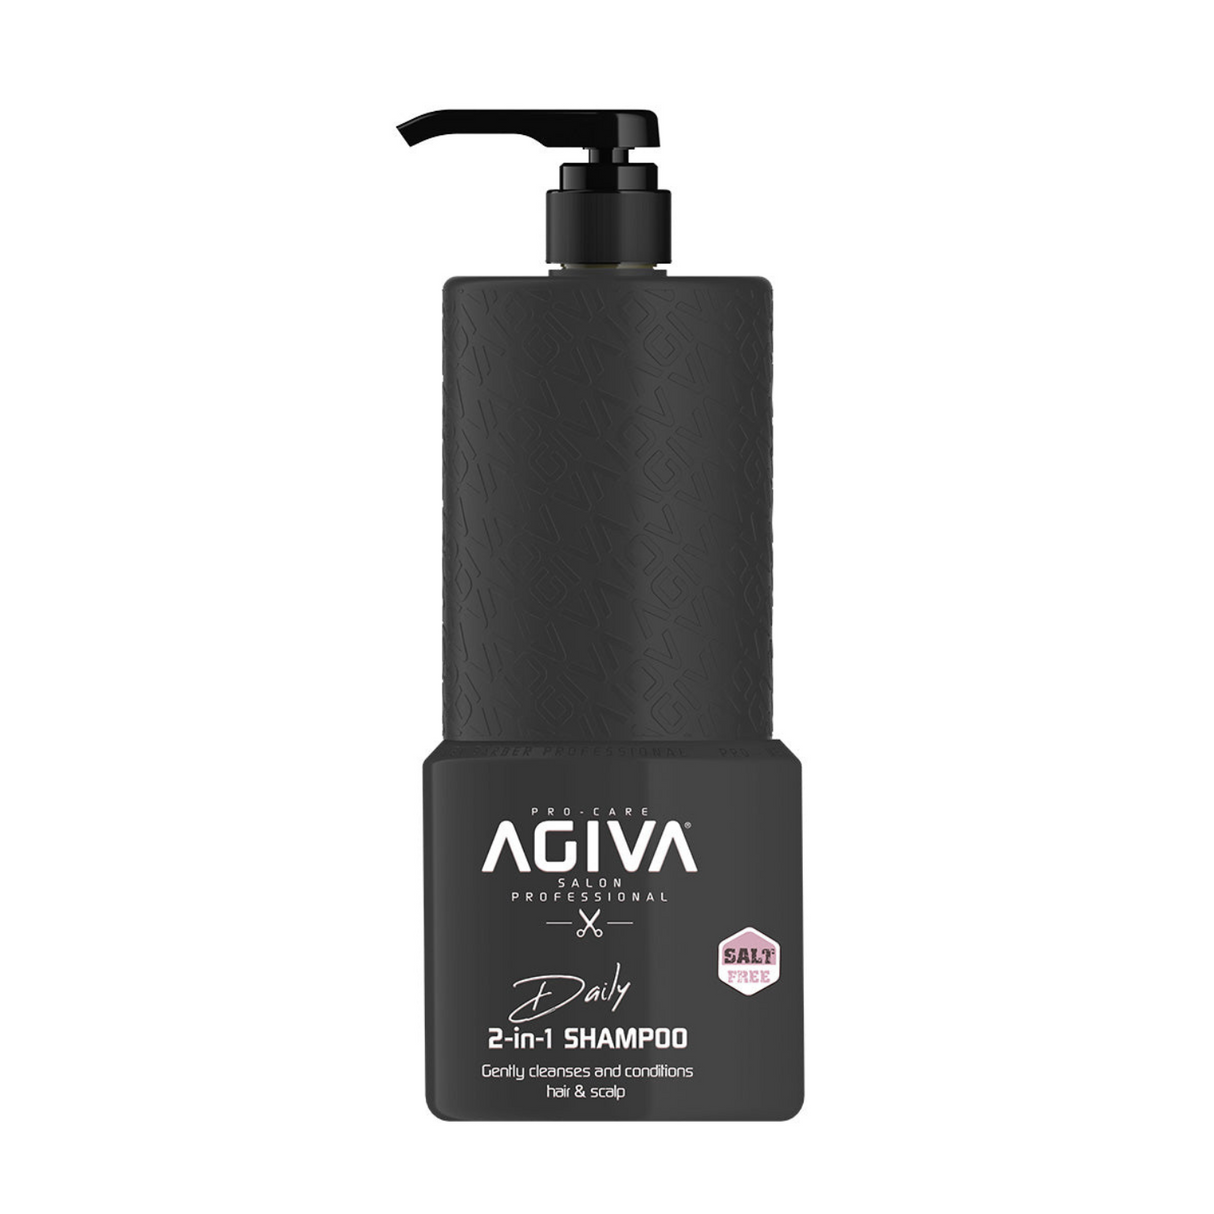 Agiva Daily 2-in-1 Shampoo 800 mL